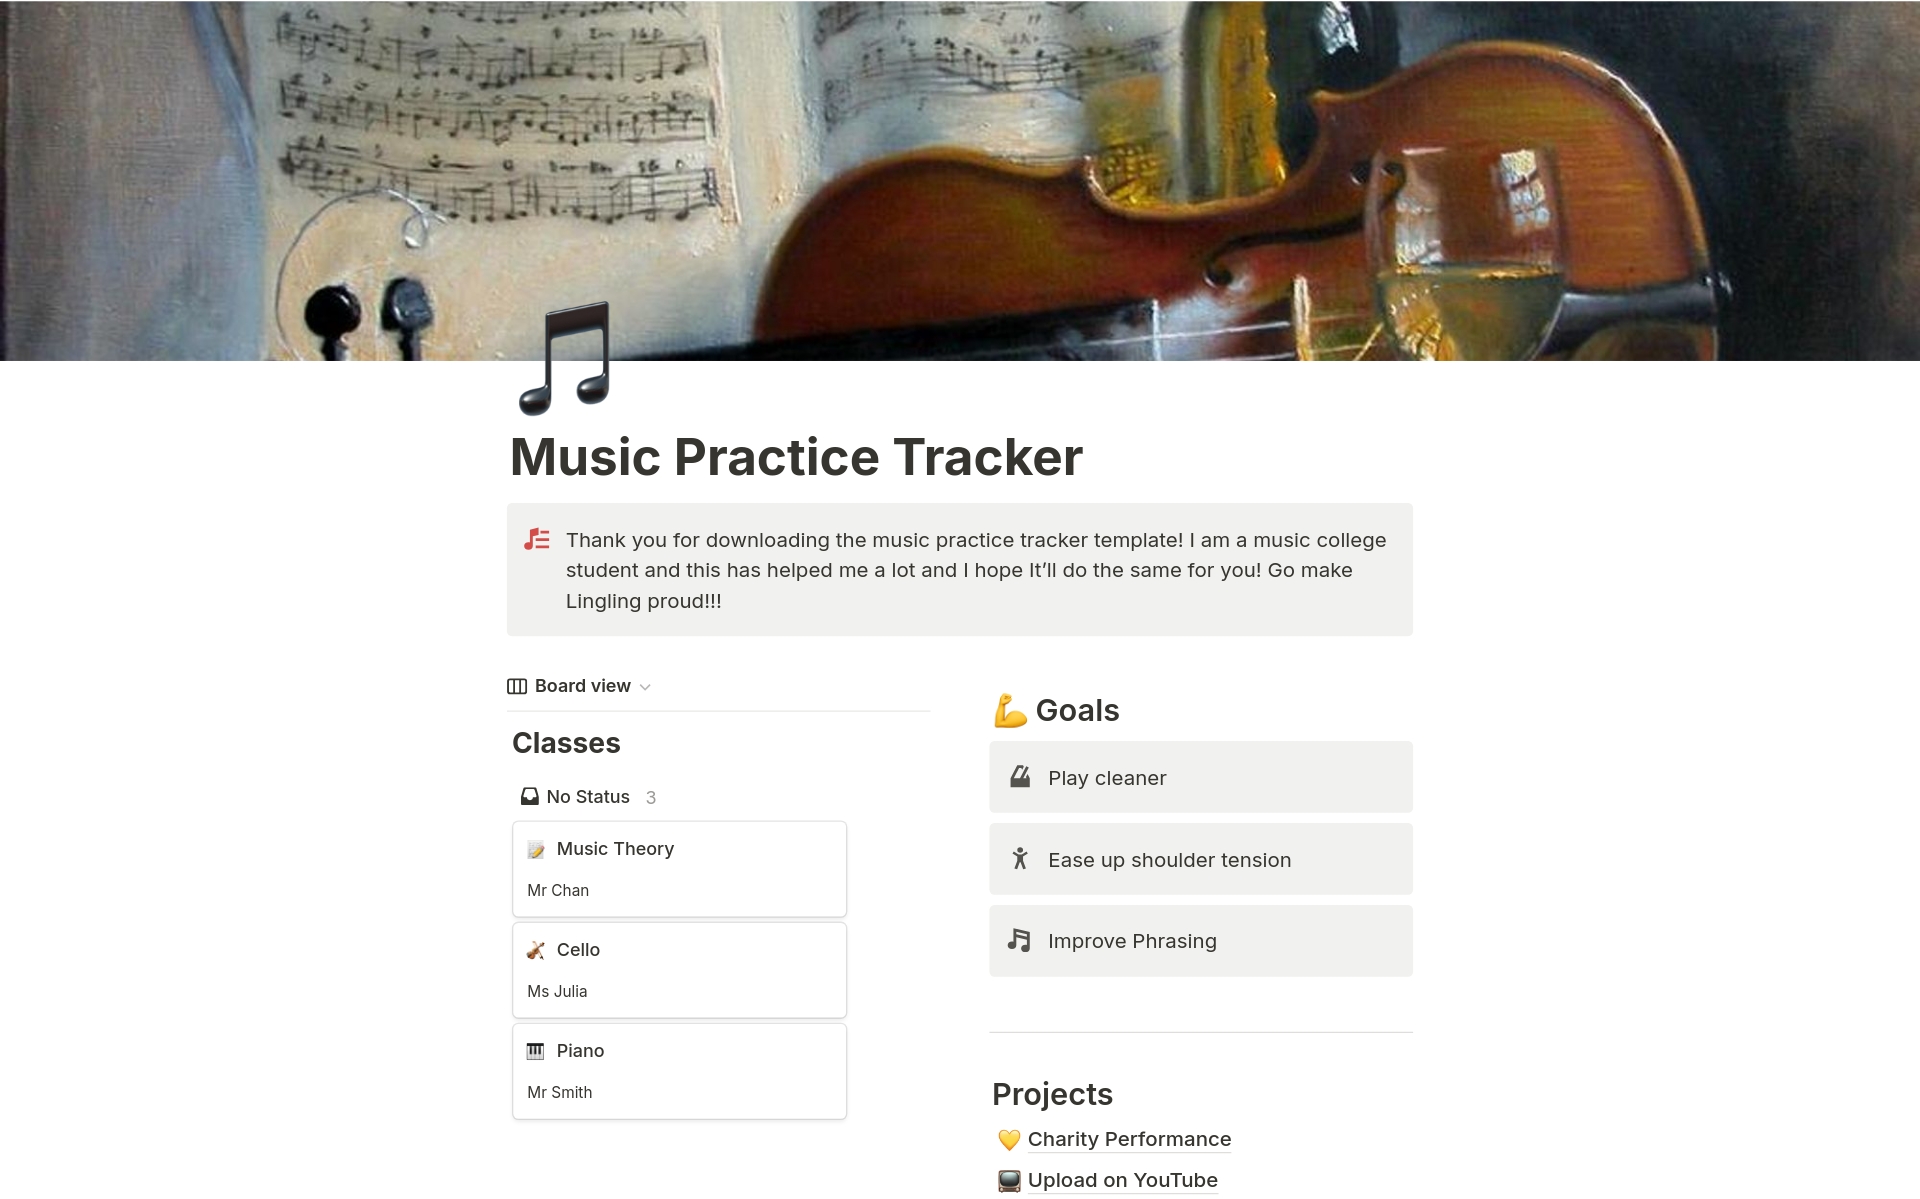 Aperçu du modèle de Music Practice Tracker